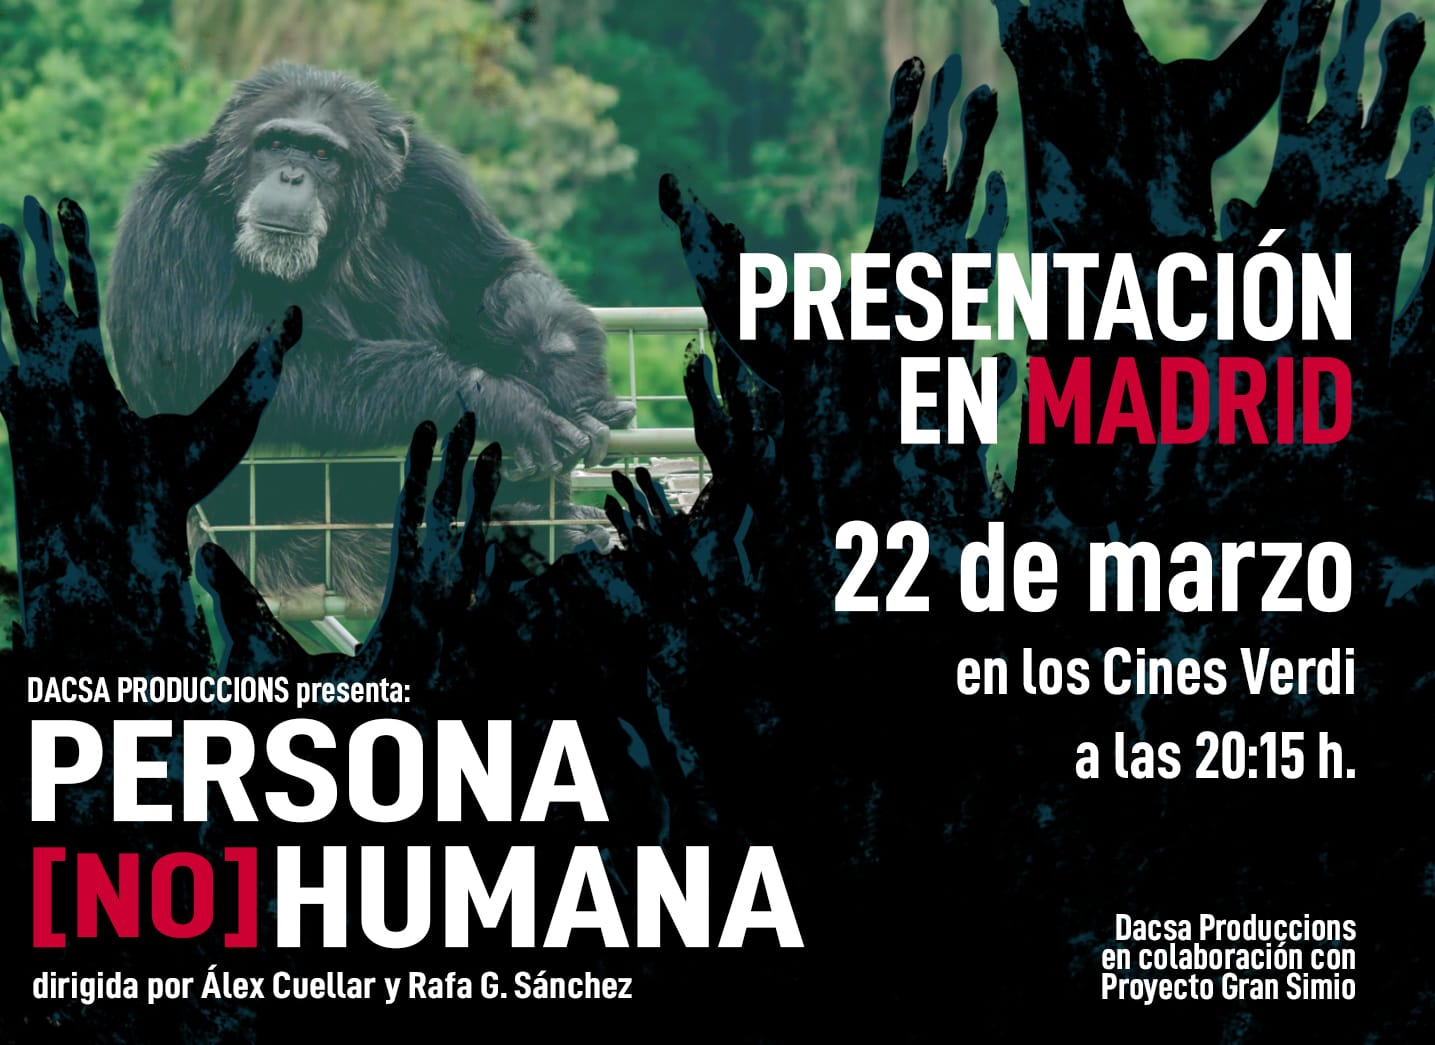 Estreno película "Persona no humana" en Madrid.